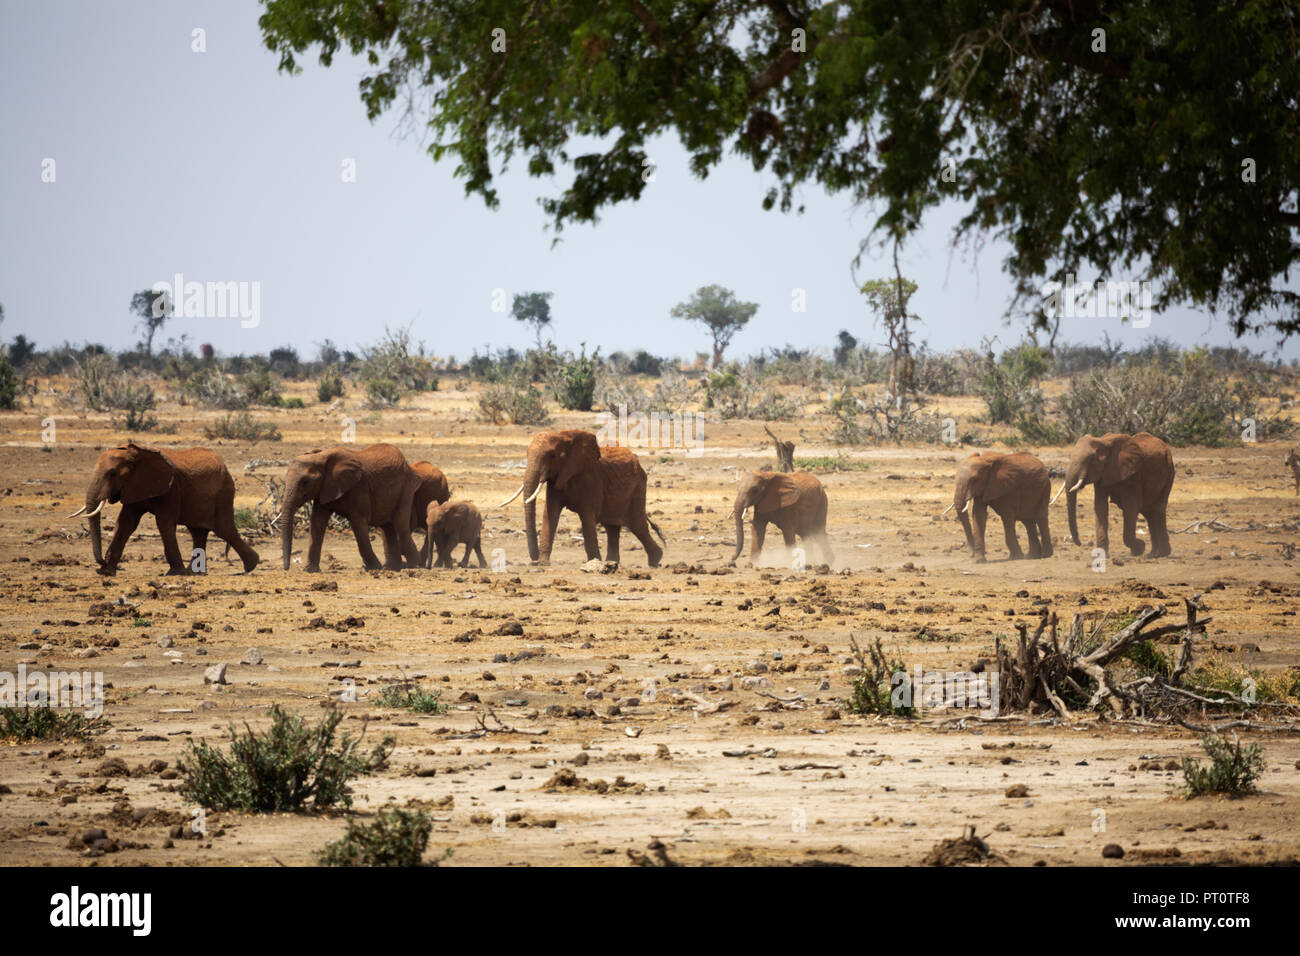 Parco nazionale orientale di tsavo, Kenya, Africa: una parata di elefanti africani a piedi attraverso la savana secca nel sole del pomeriggio Foto Stock